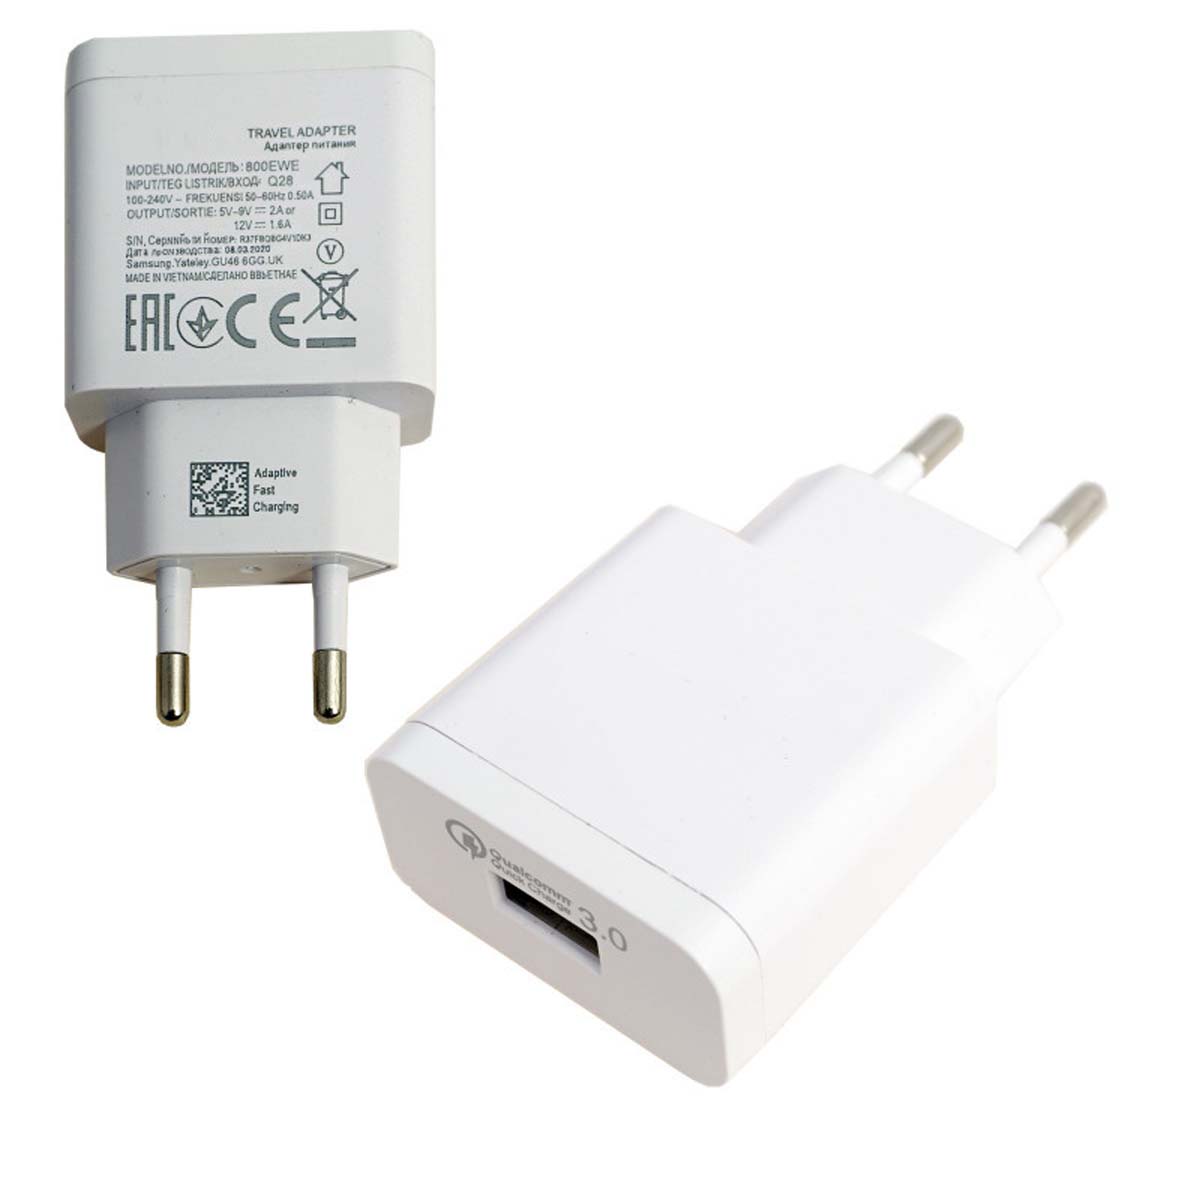 СЗУ (Сетевое зарядное устройство) MRM S9 (800EWE), 3A, 1 USB, QC3.0, цвет белый